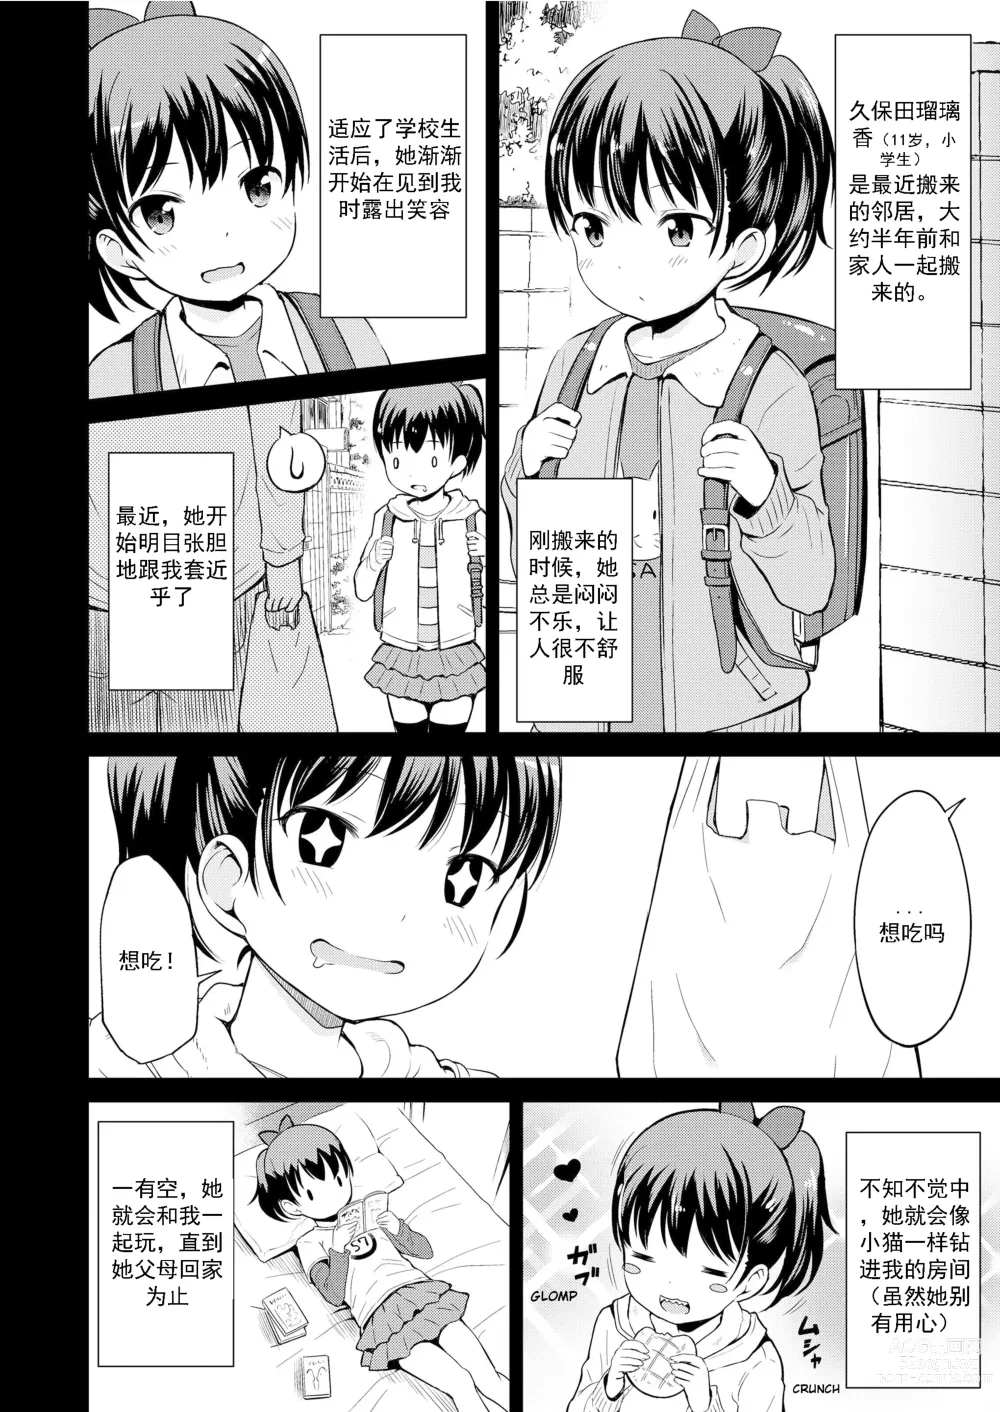 Page 5 of manga 